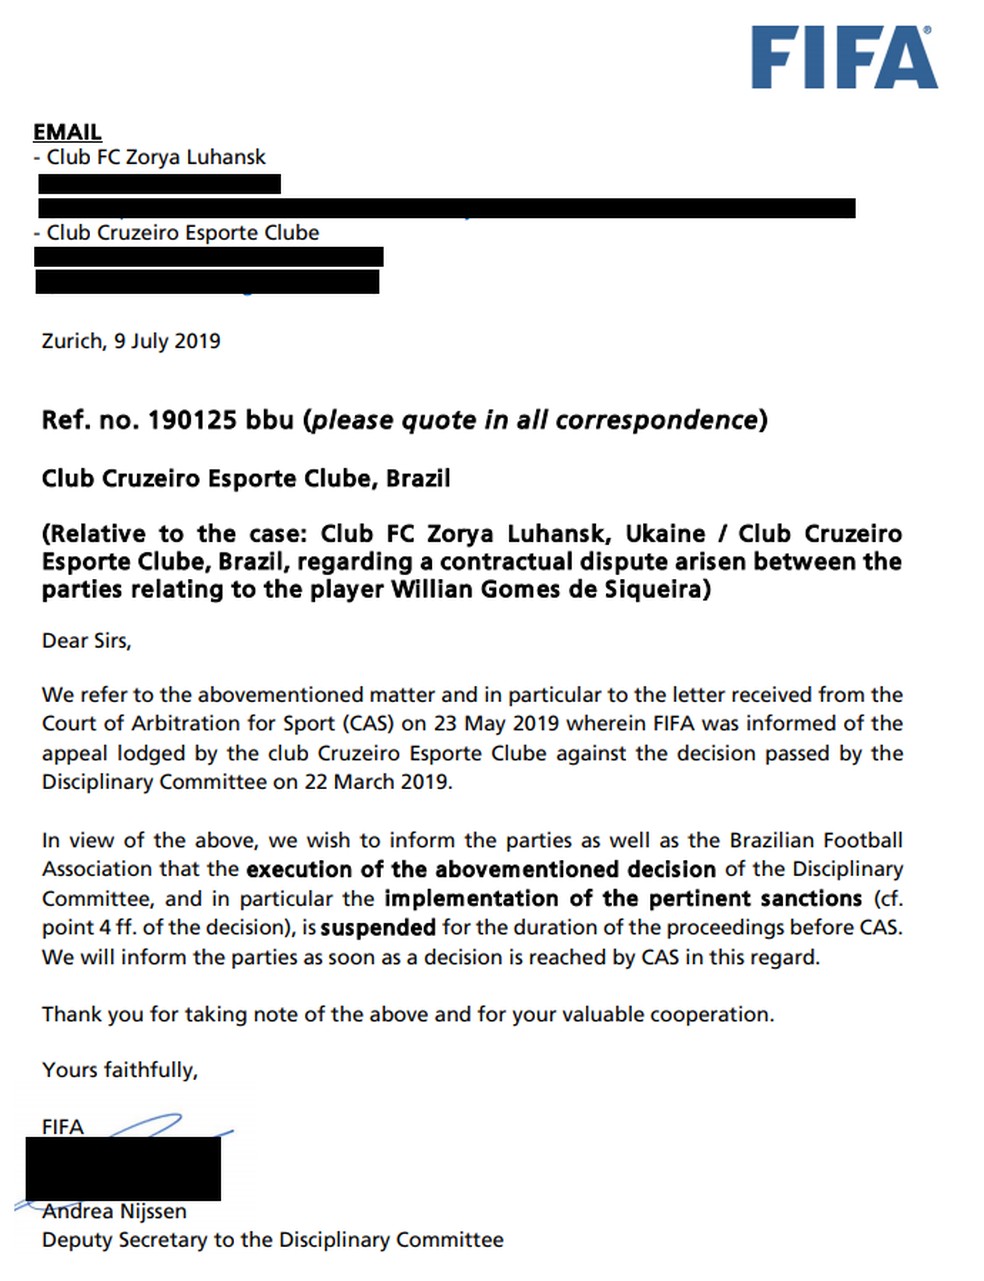 Carta da Fifa enviada ao Cruzeiro e ao Zorya sobre o recurso no TAS/CAS — Foto: Reprodução